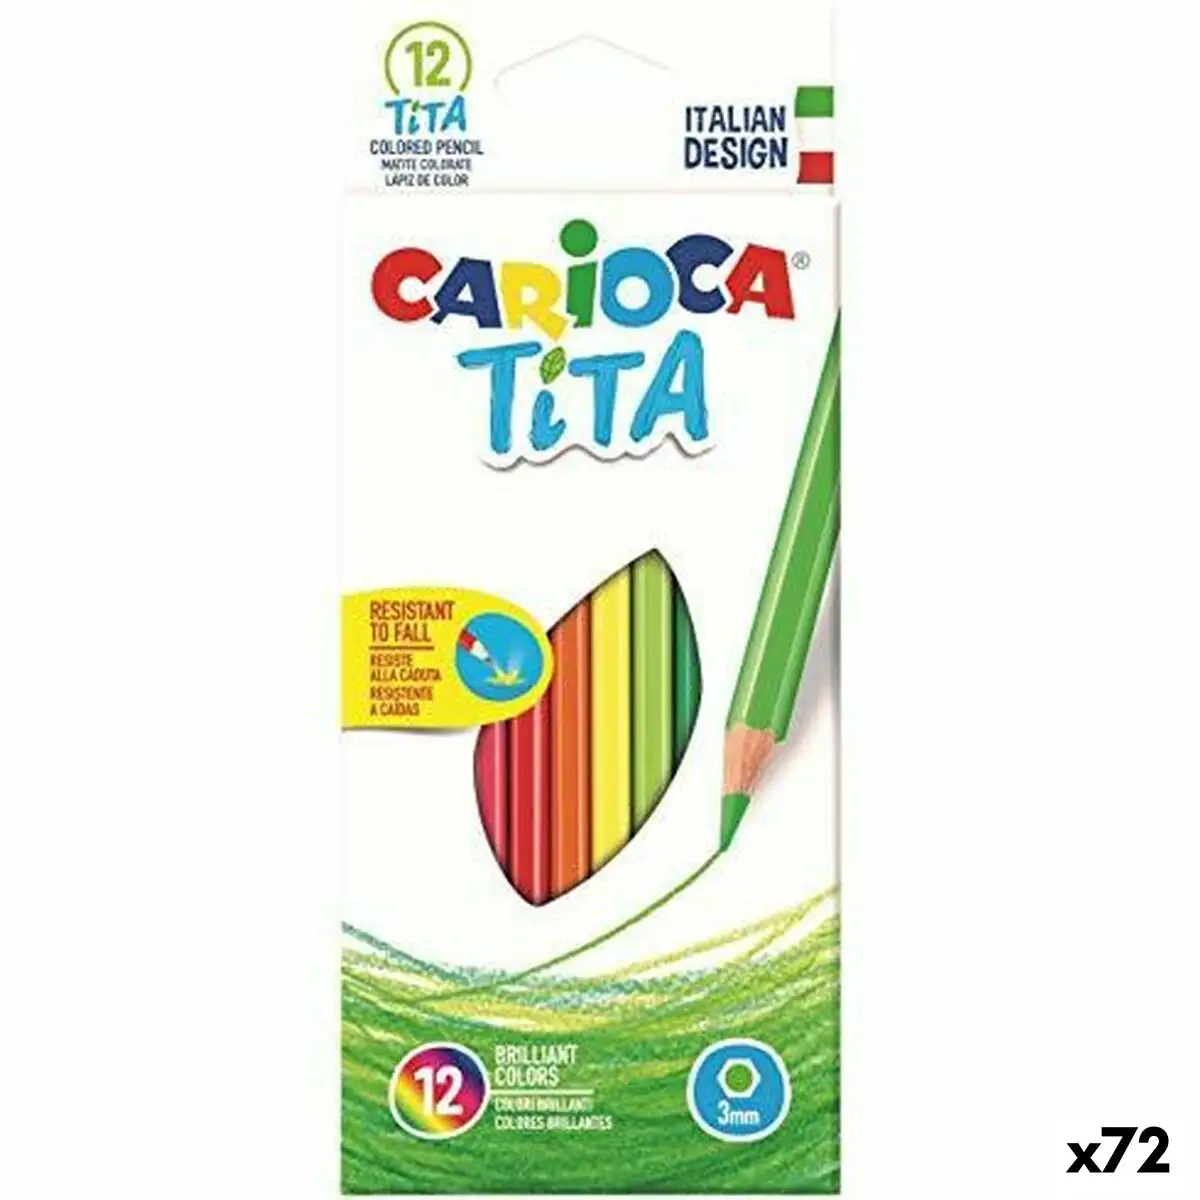 Ensemble de crayons carioca tita multicouleur 12 pieces resine 72 unites _6223. DIAYTAR SENEGAL - Votre Destination Shopping Éthique. Parcourez notre gamme et choisissez des articles qui respectent l'environnement et les communautés locales.